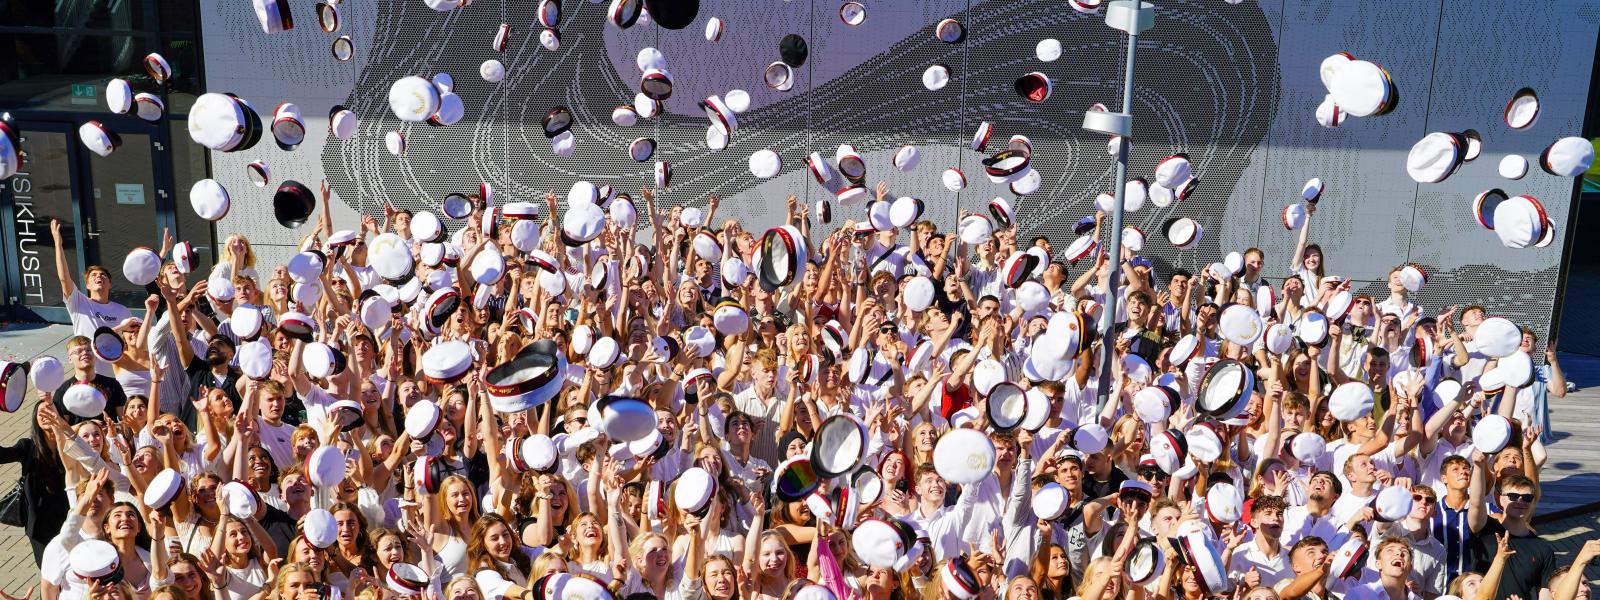 Alle årets studenter kaster deres hue op i luften udenfor Musikhuset.